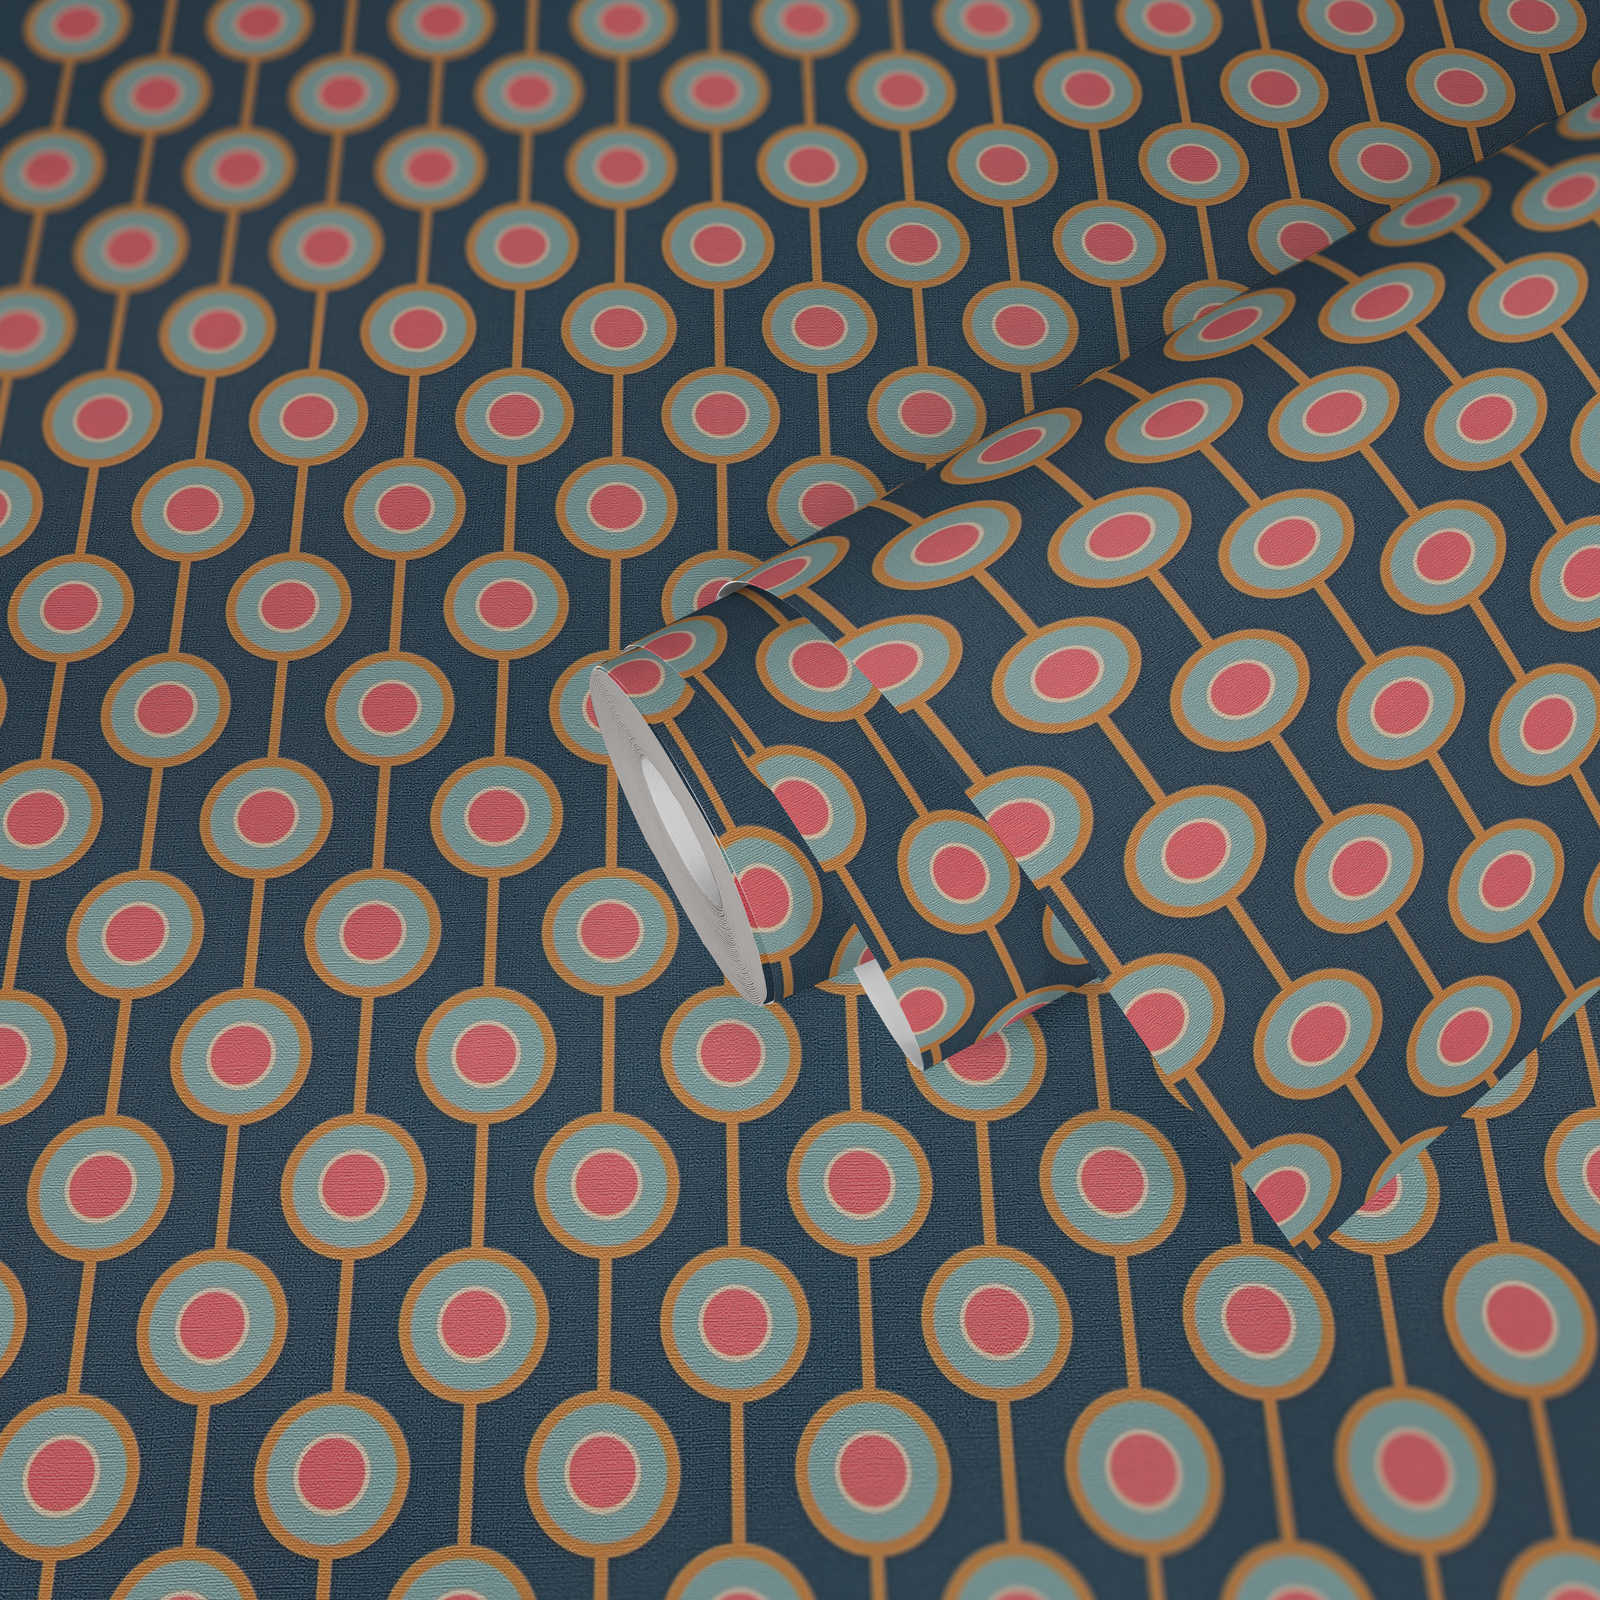             Retro Tapete mit leichter Struktur und Kreis Bemusterung – Blau, Gelb, Pink
        